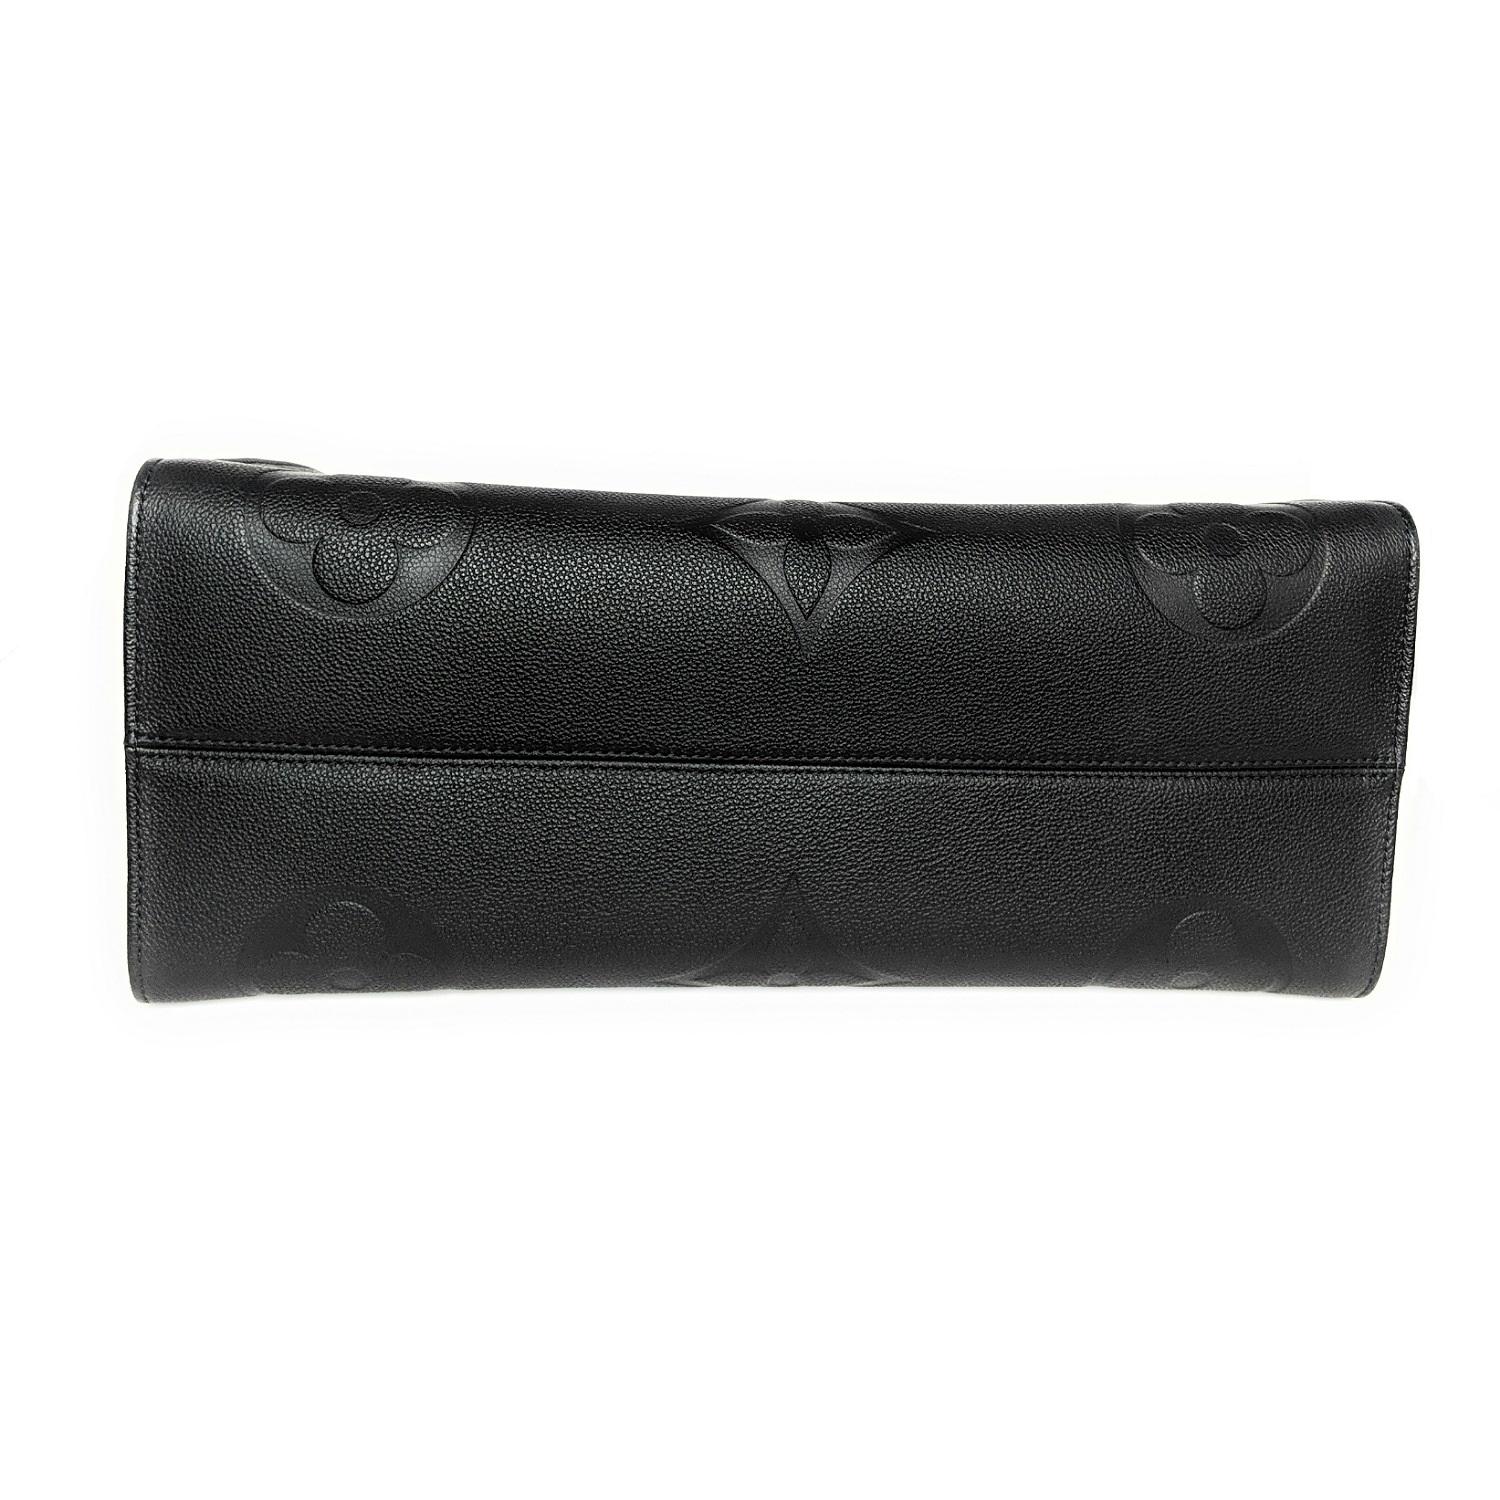 Black Louis Vuitton Monogram Empreinte Leather Onthego GM Tote